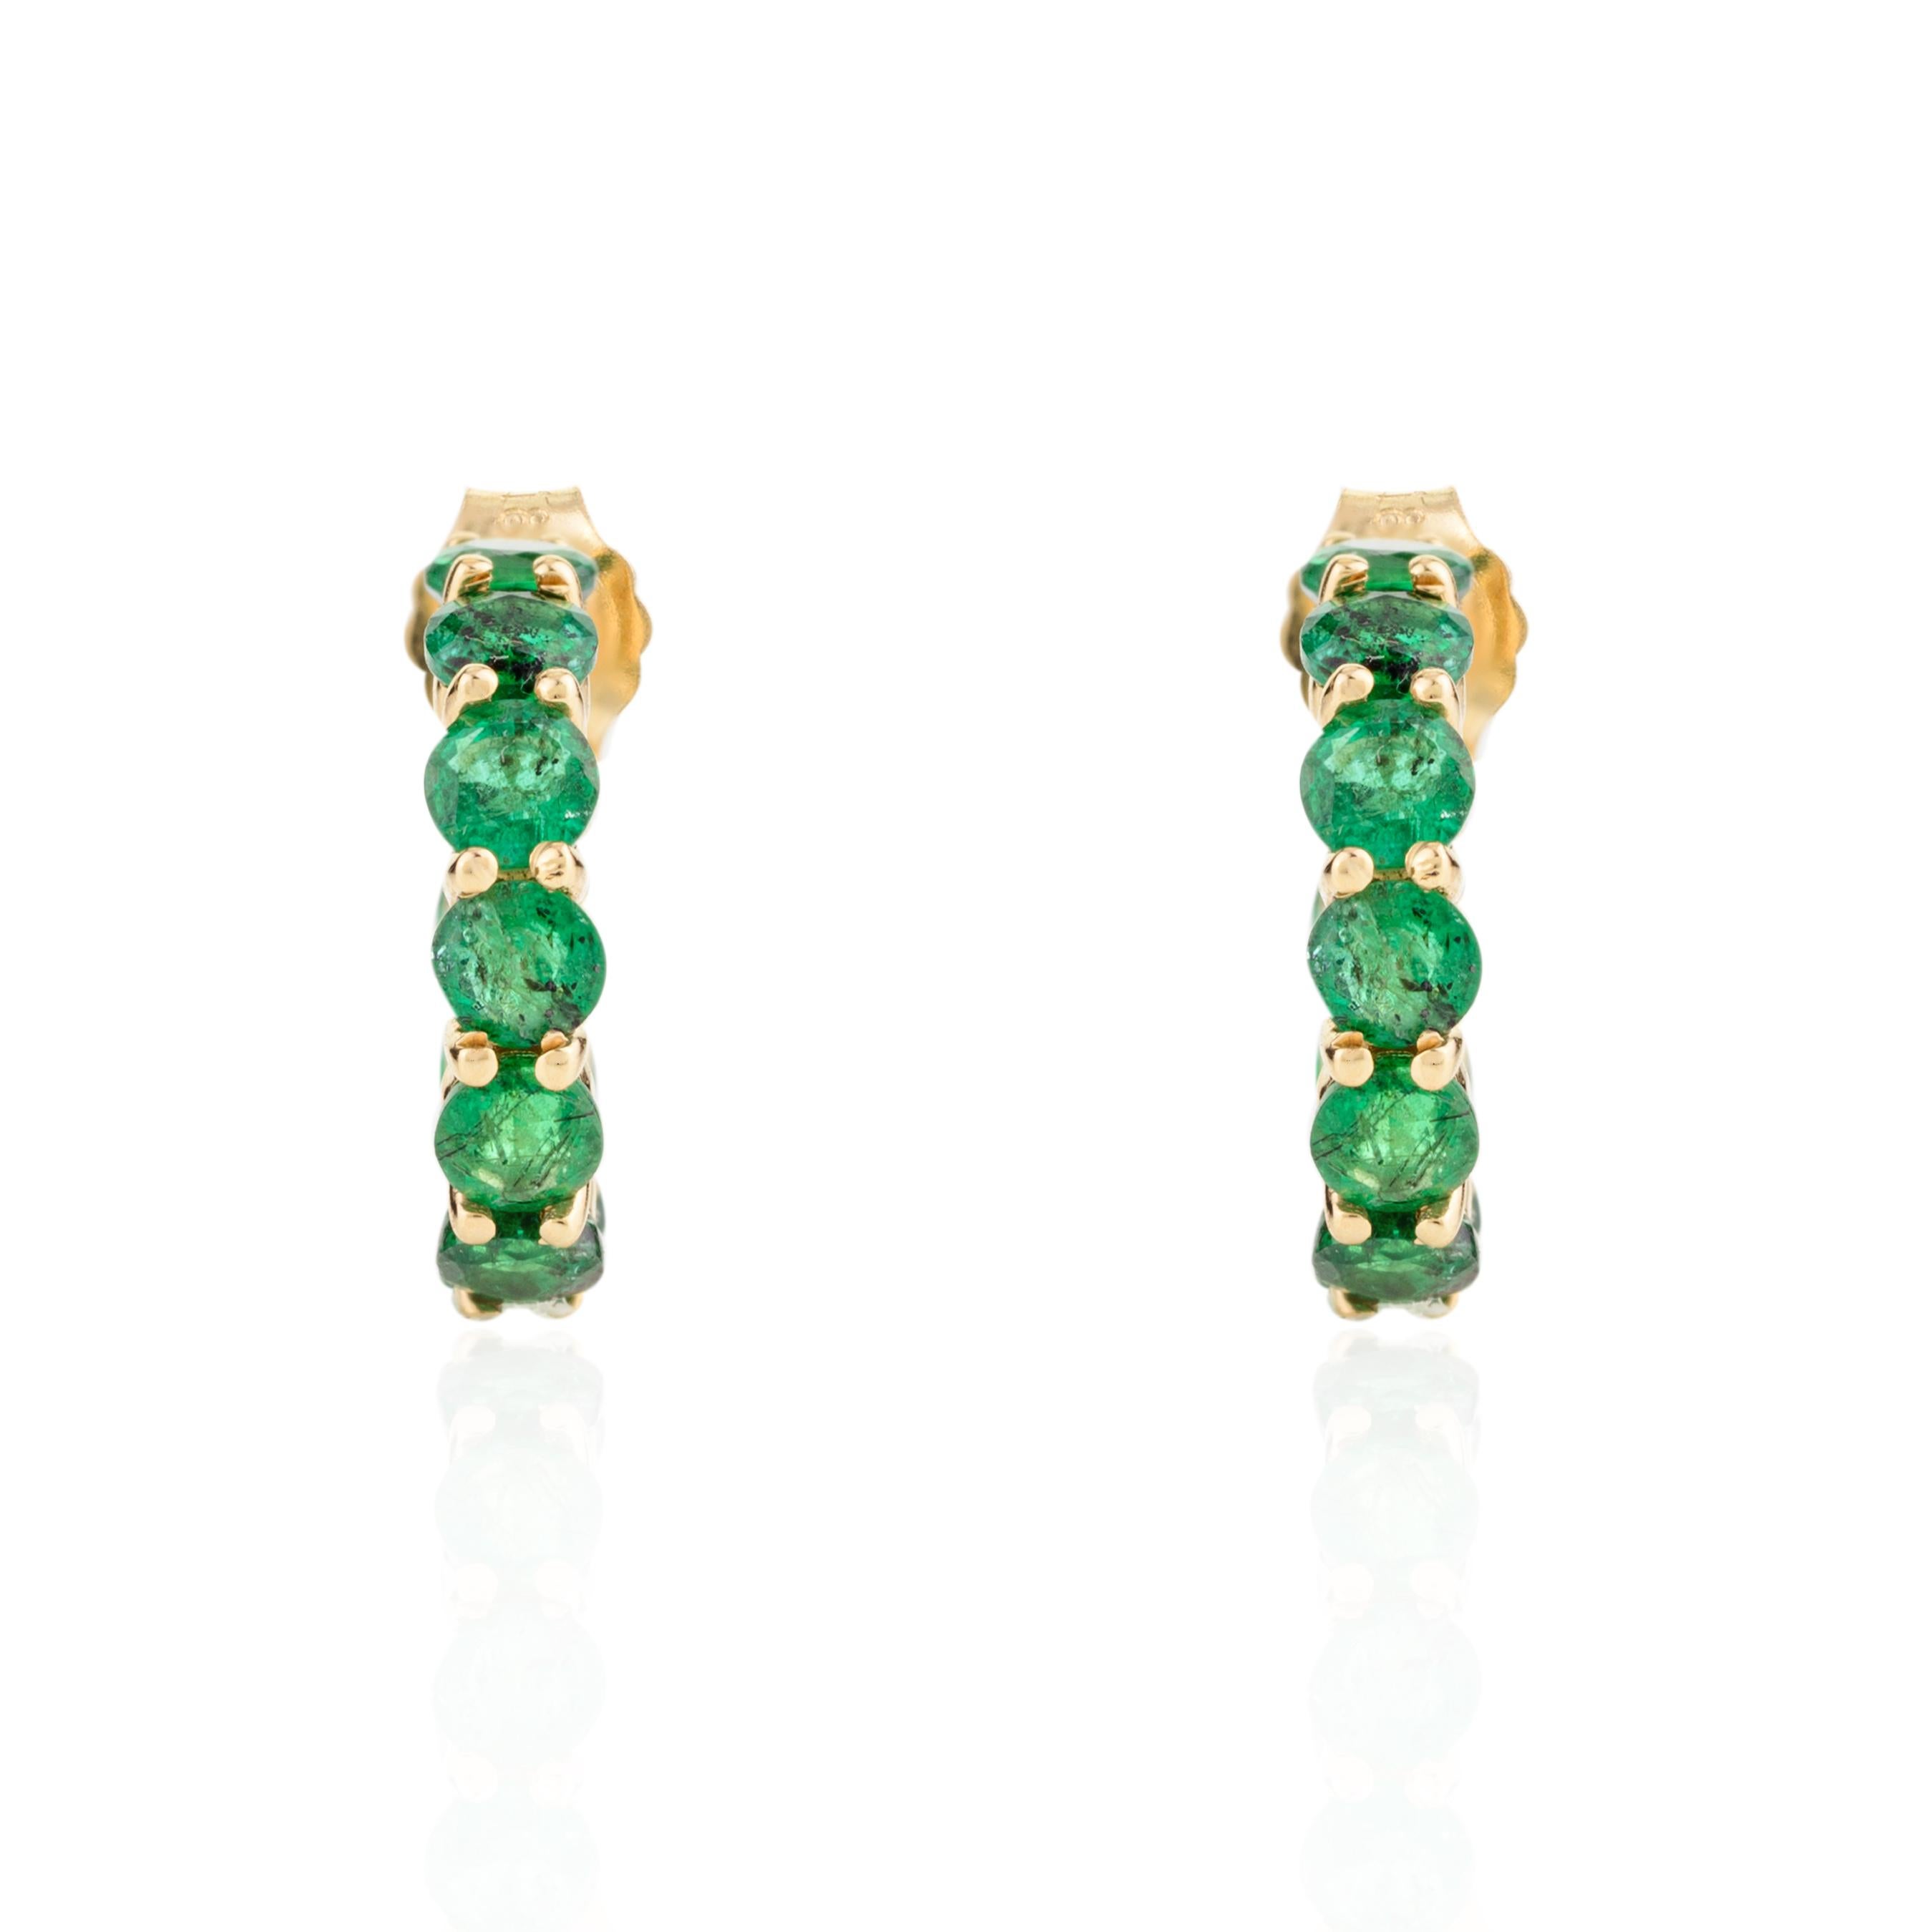 Natürlicher Smaragd Everyday Huggie Hoop Earrings in 18K Gold, um Ihren Look zu unterstreichen. Sie brauchen Ohrstecker, um mit Ihrem Look ein Statement zu setzen. Diese Ohrringe mit rundgeschliffenem Smaragd sorgen für einen funkelnden, luxuriösen